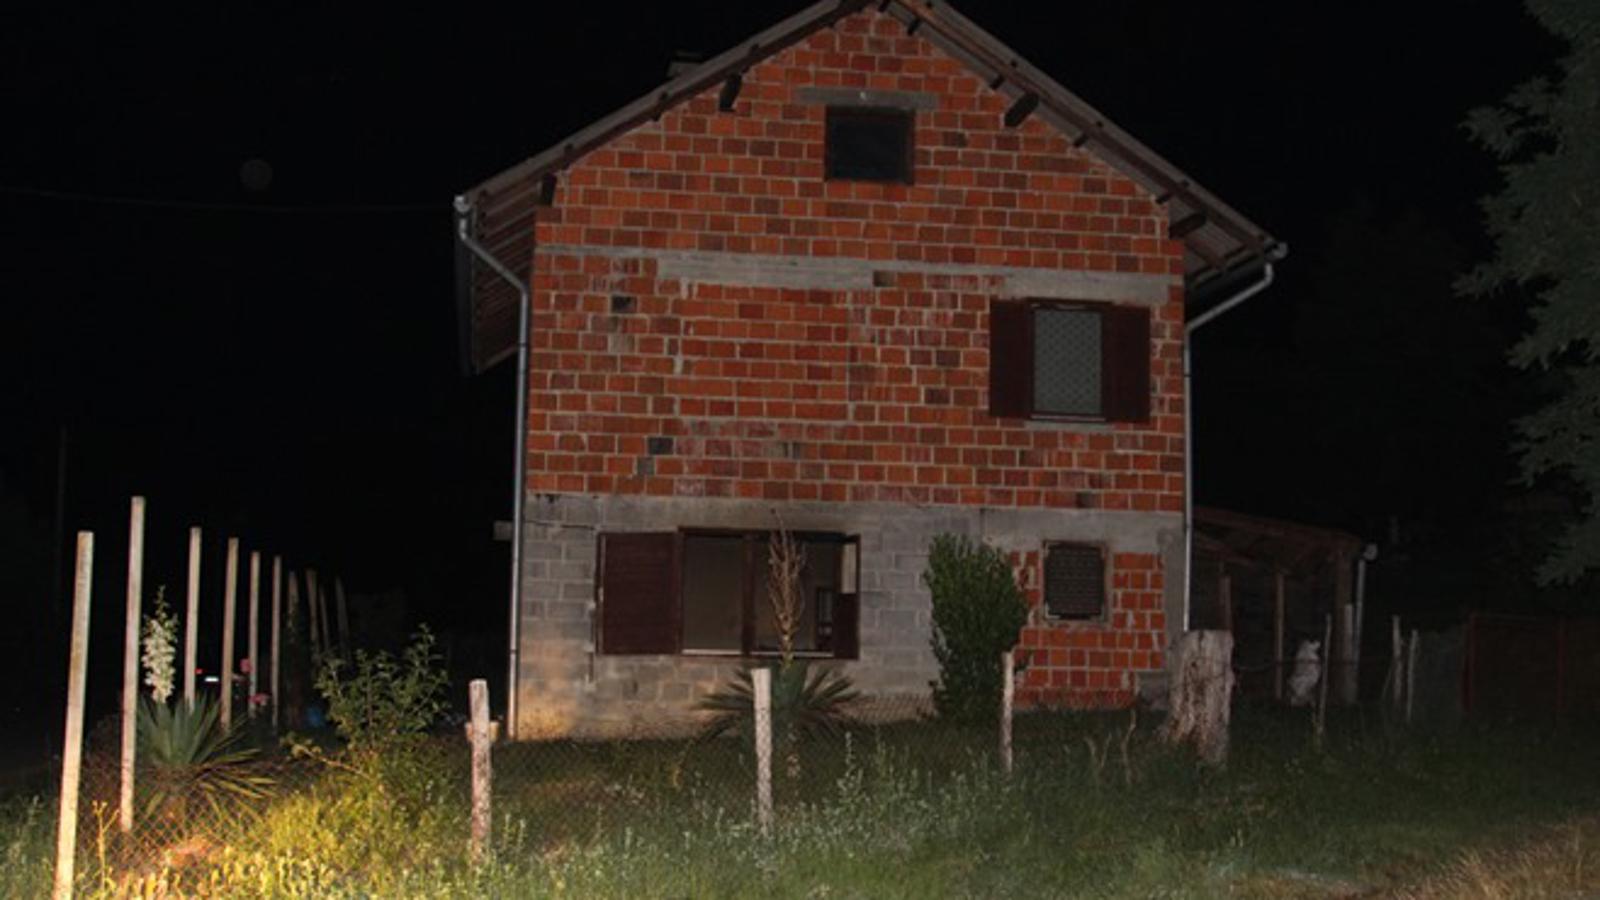 Obiteljska kuća, u Doljancima, u kojoj je došlo do požara